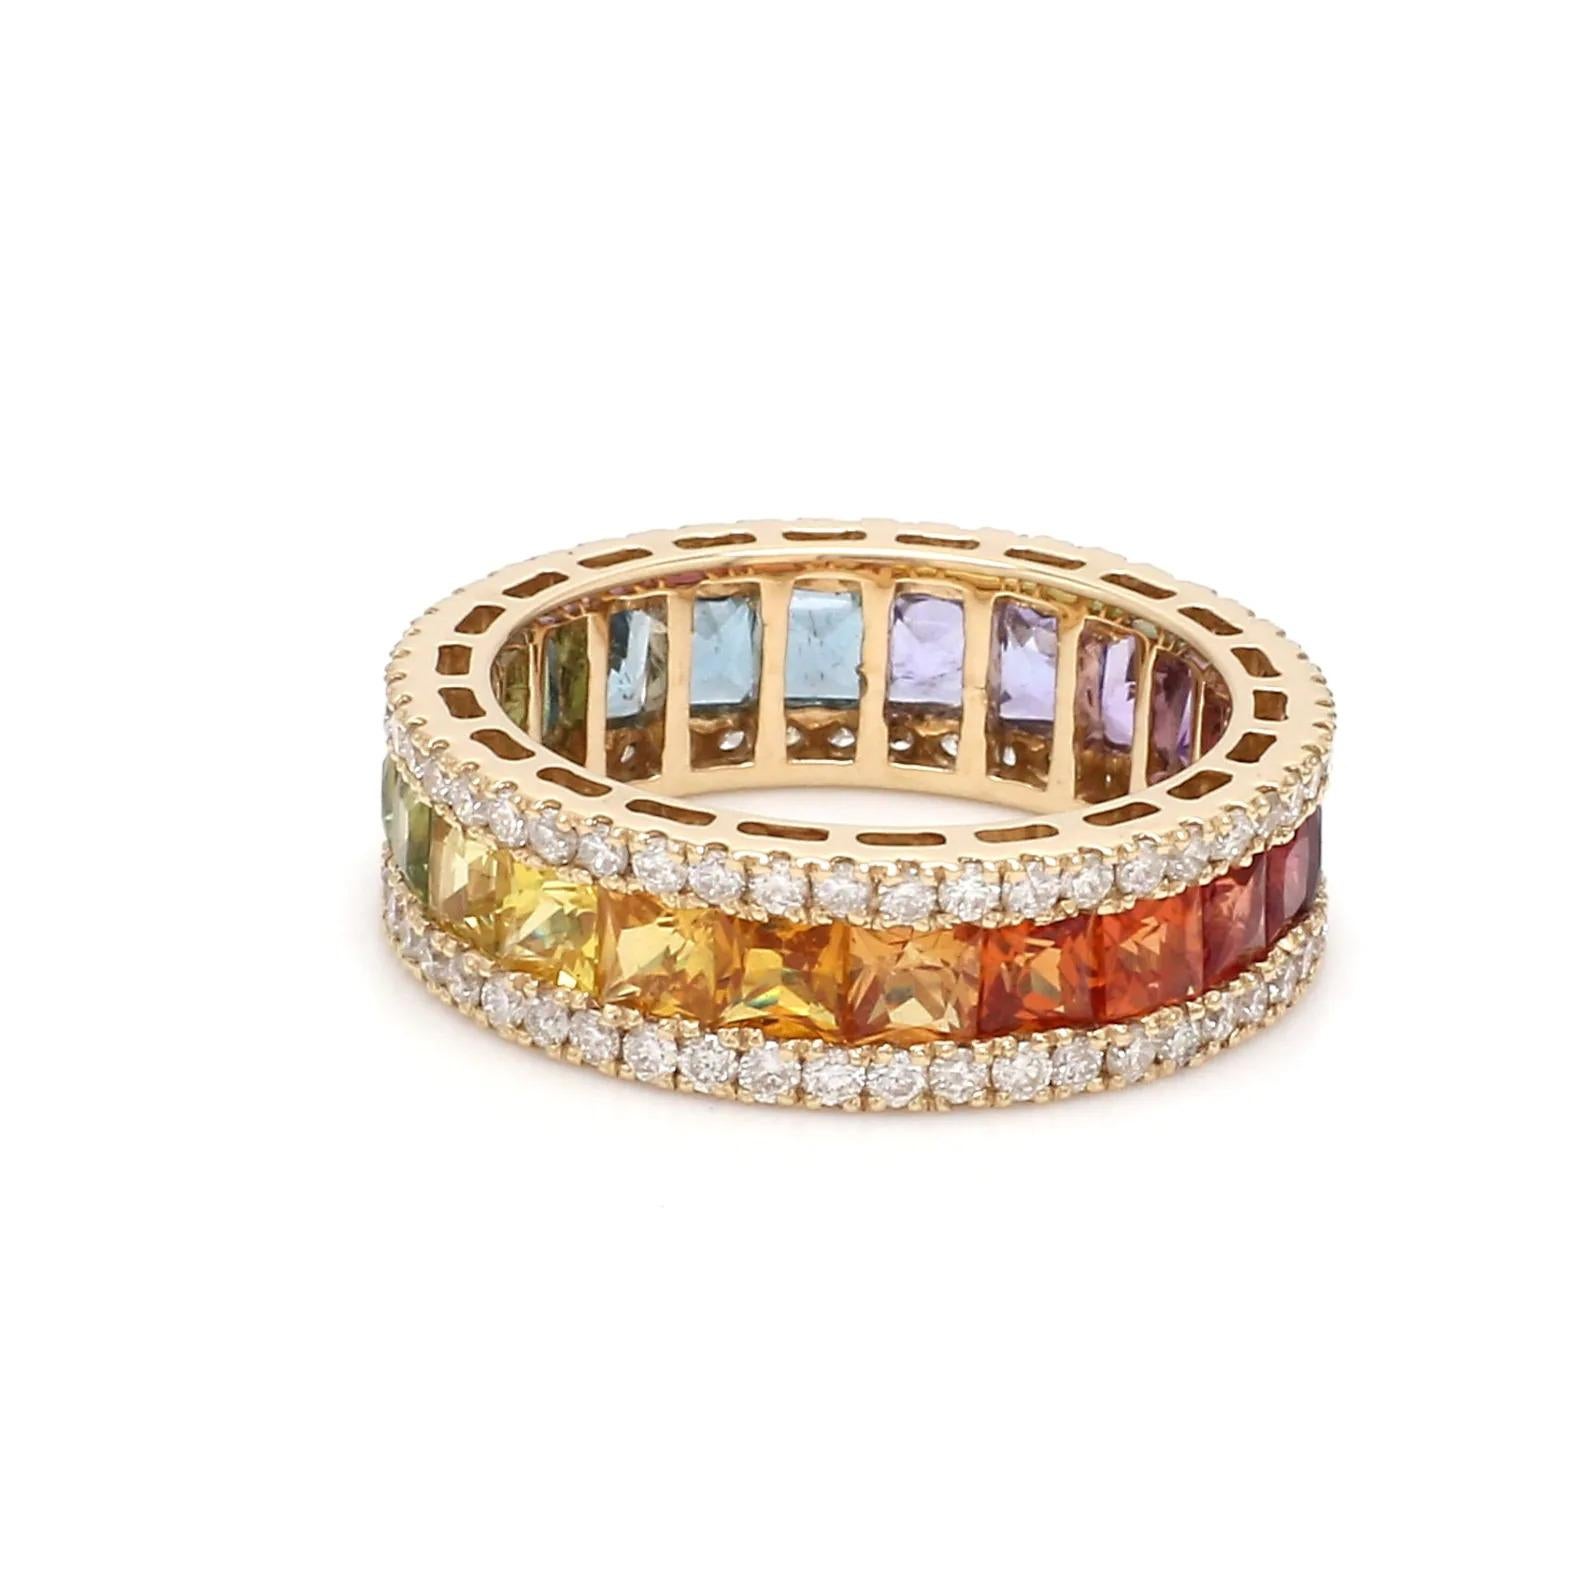 Dieser Ring wurde mit großer Sorgfalt aus 14-karätigem Gold gefertigt.  Er ist von Hand mit 3,5 Karat Multi-Saphiren, Edelsteinen und 1,0 Karat funkelnden Diamanten besetzt. 

Der Ring hat die Größe 7 und kann auf Anfrage größer oder kleiner gemacht